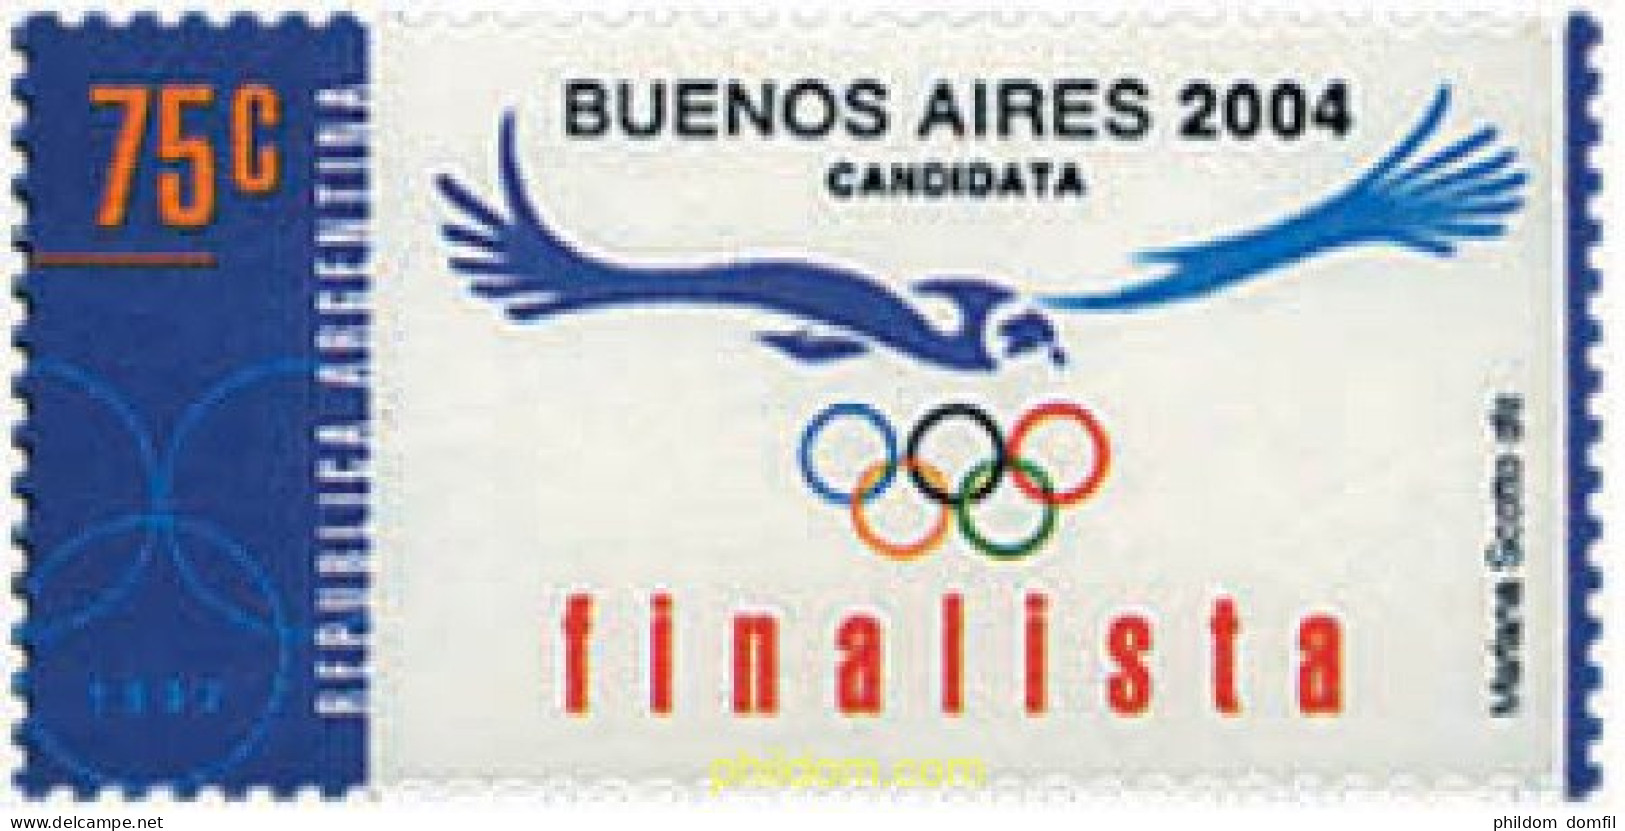 32169 MNH ARGENTINA 1997 CANDIDATURA DE BUENOS AIRES A LOS JUEGOS OLIMPICOS DE 2004 - Ungebraucht